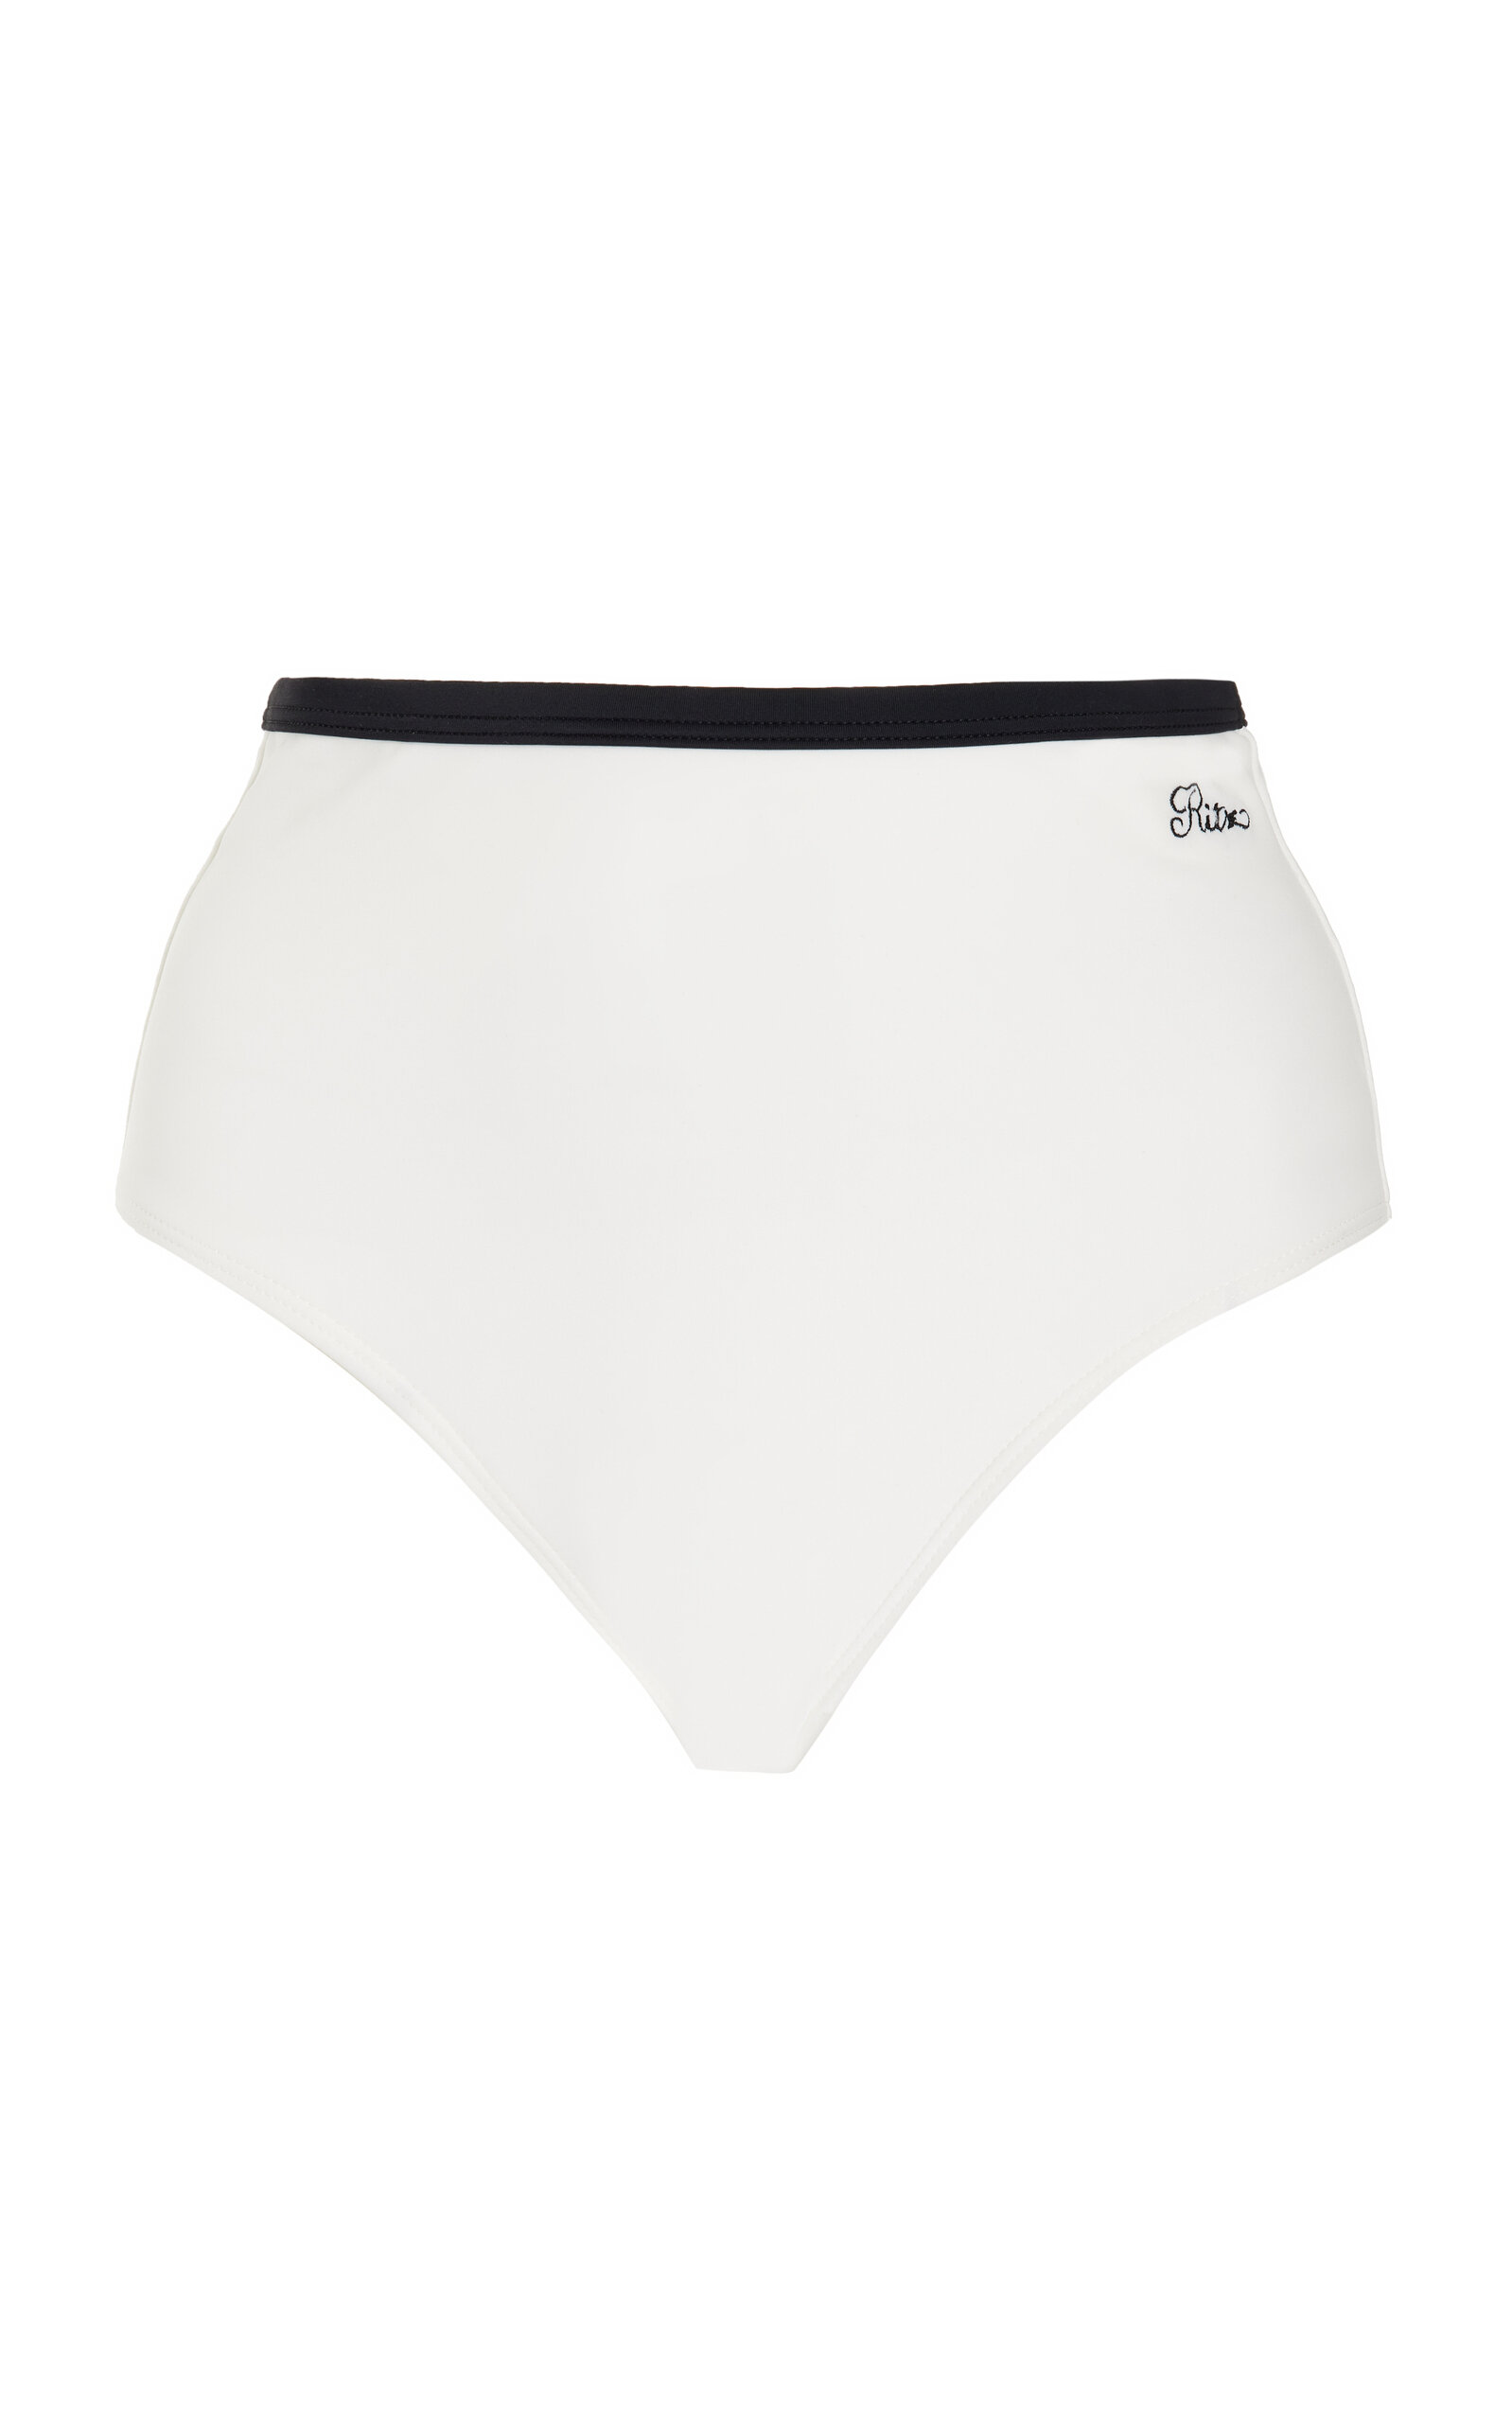 FRAME - x Ritz Bikini Bottom - White - XS - Moda Operandi